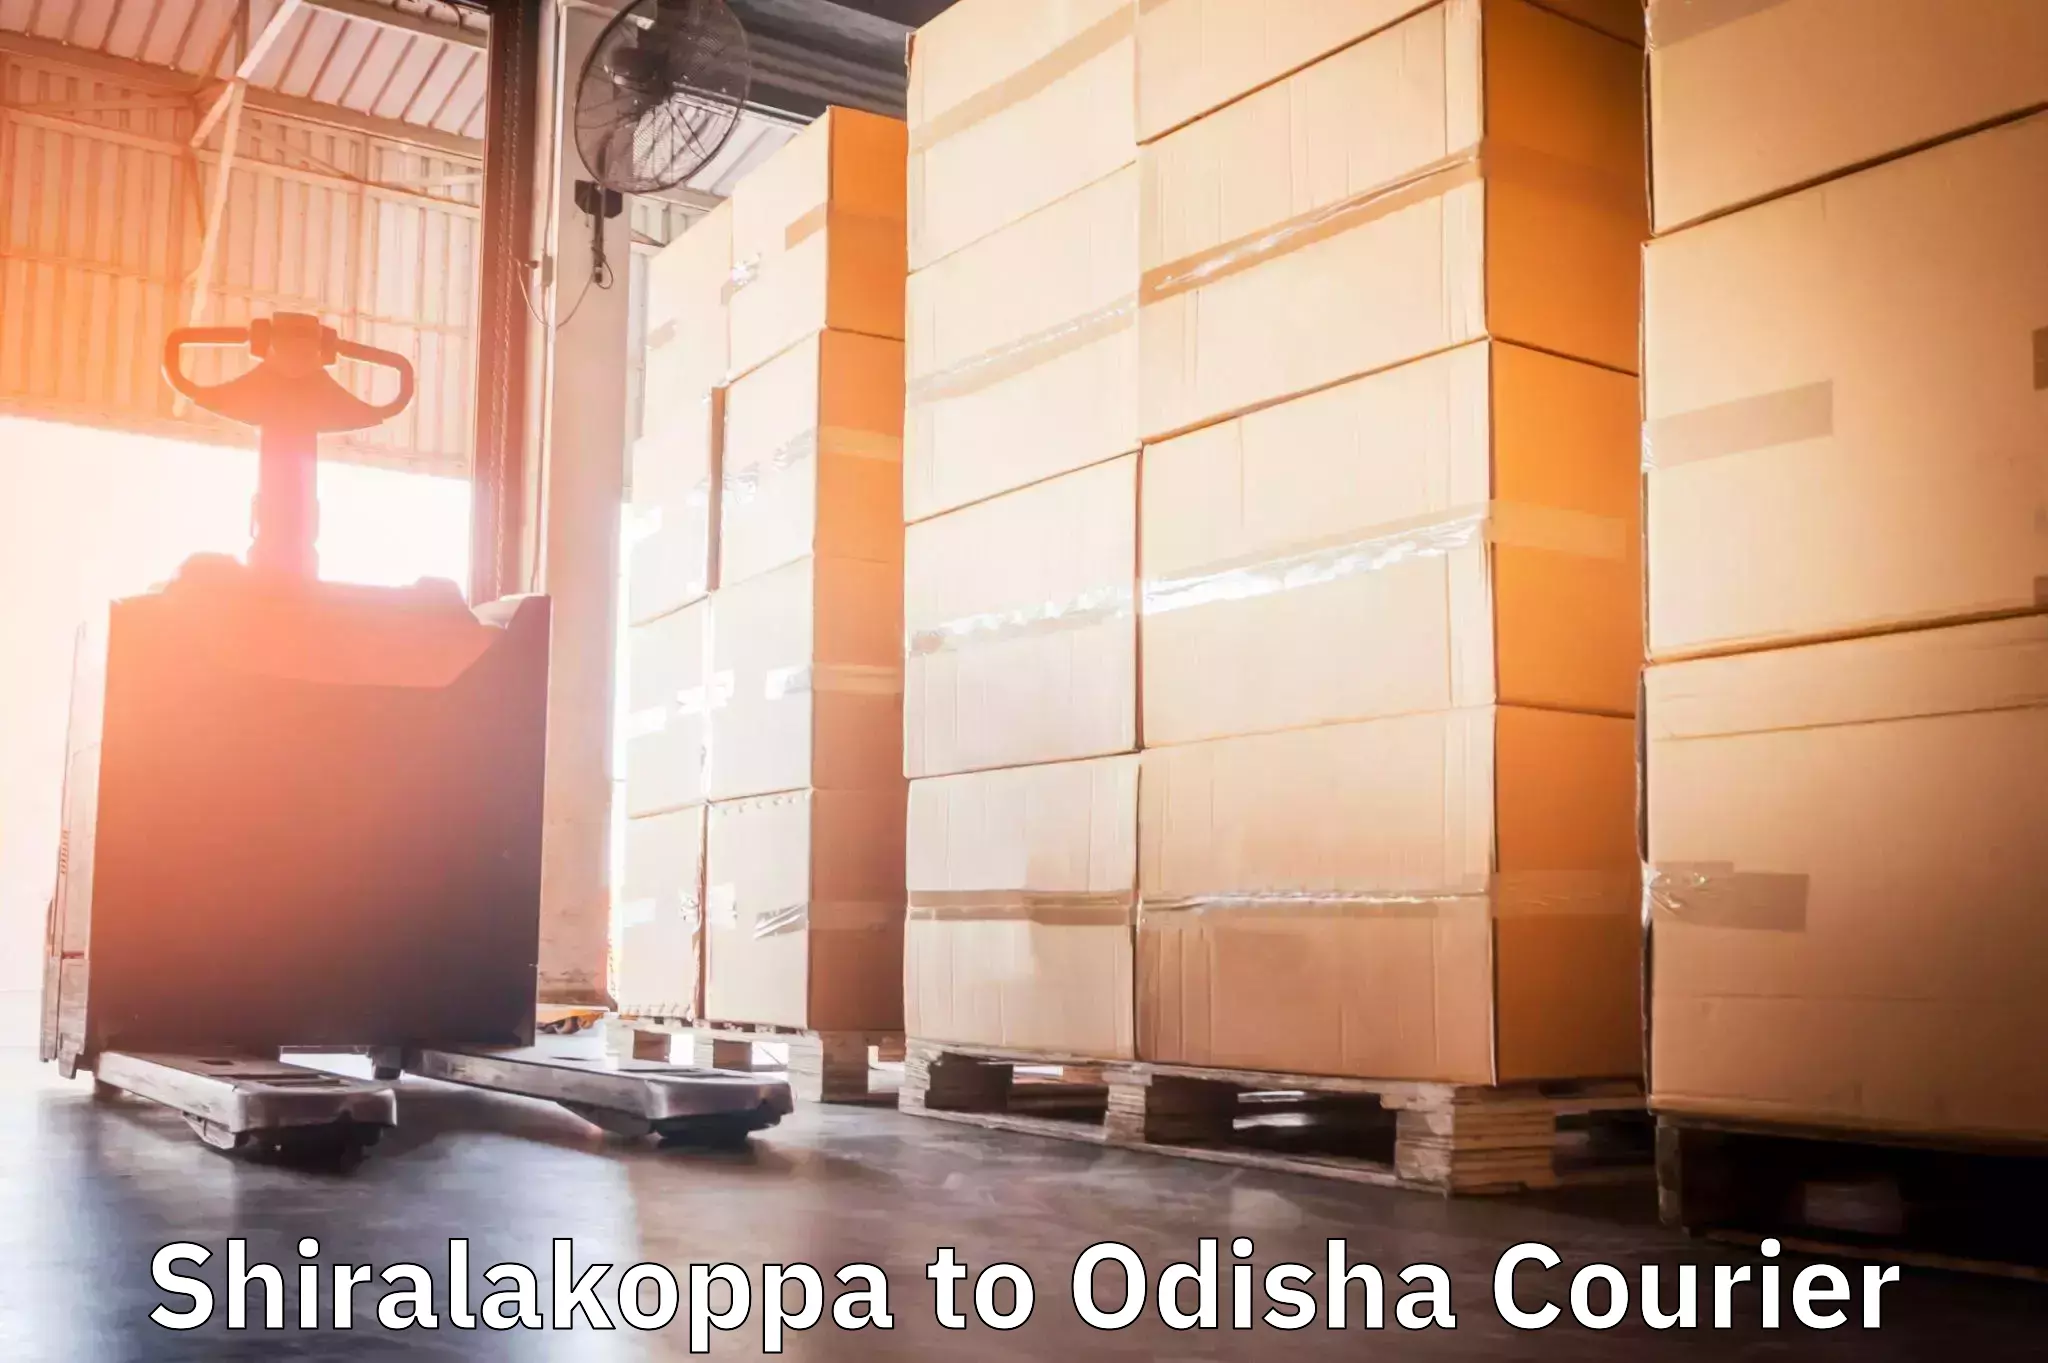 Courier service comparison Shiralakoppa to Cuttack